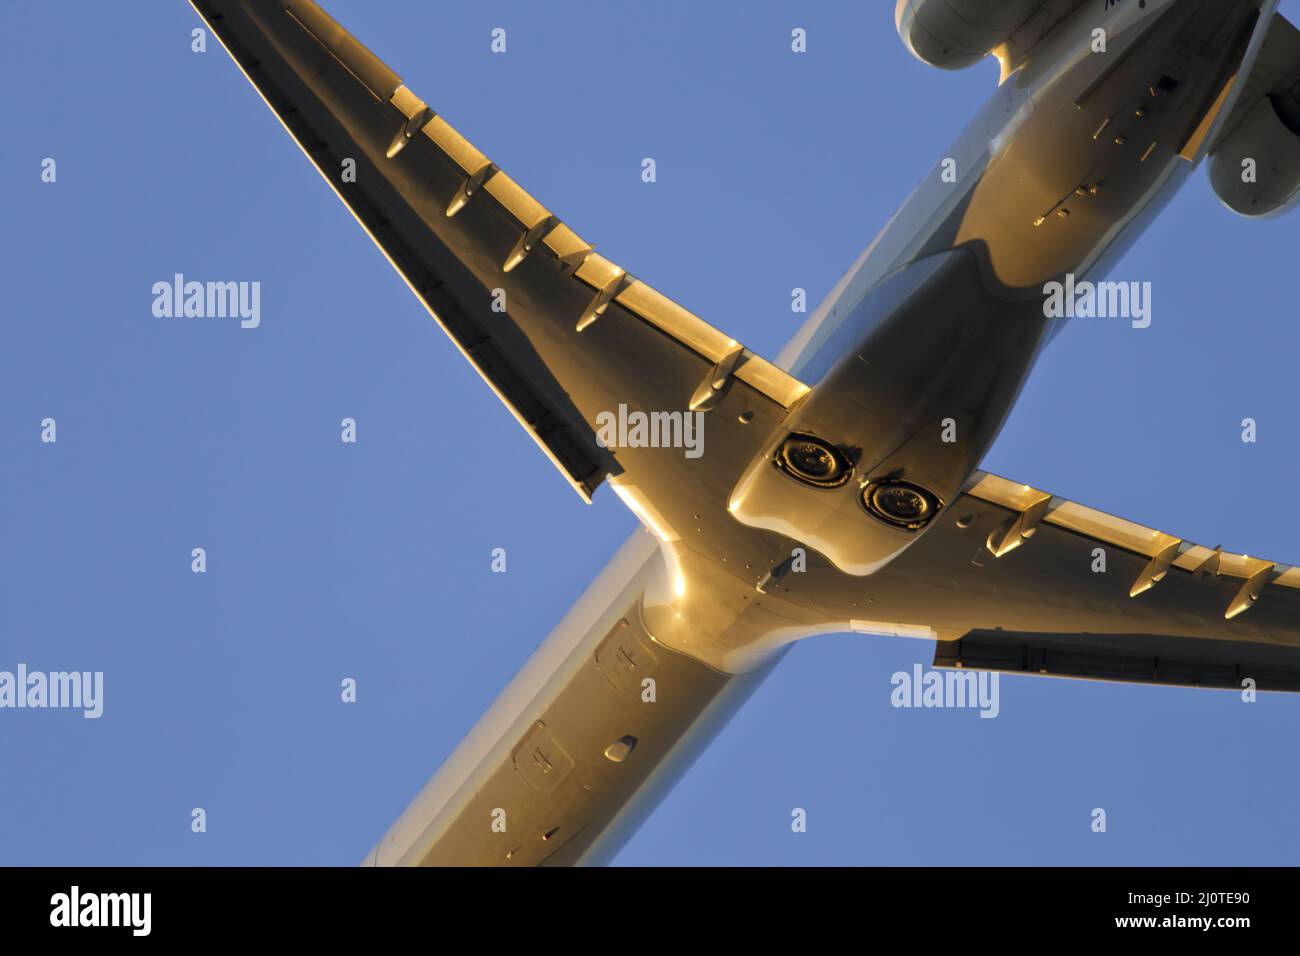 Un avion commercial prend son décollage à un aéroport international Banque D'Images